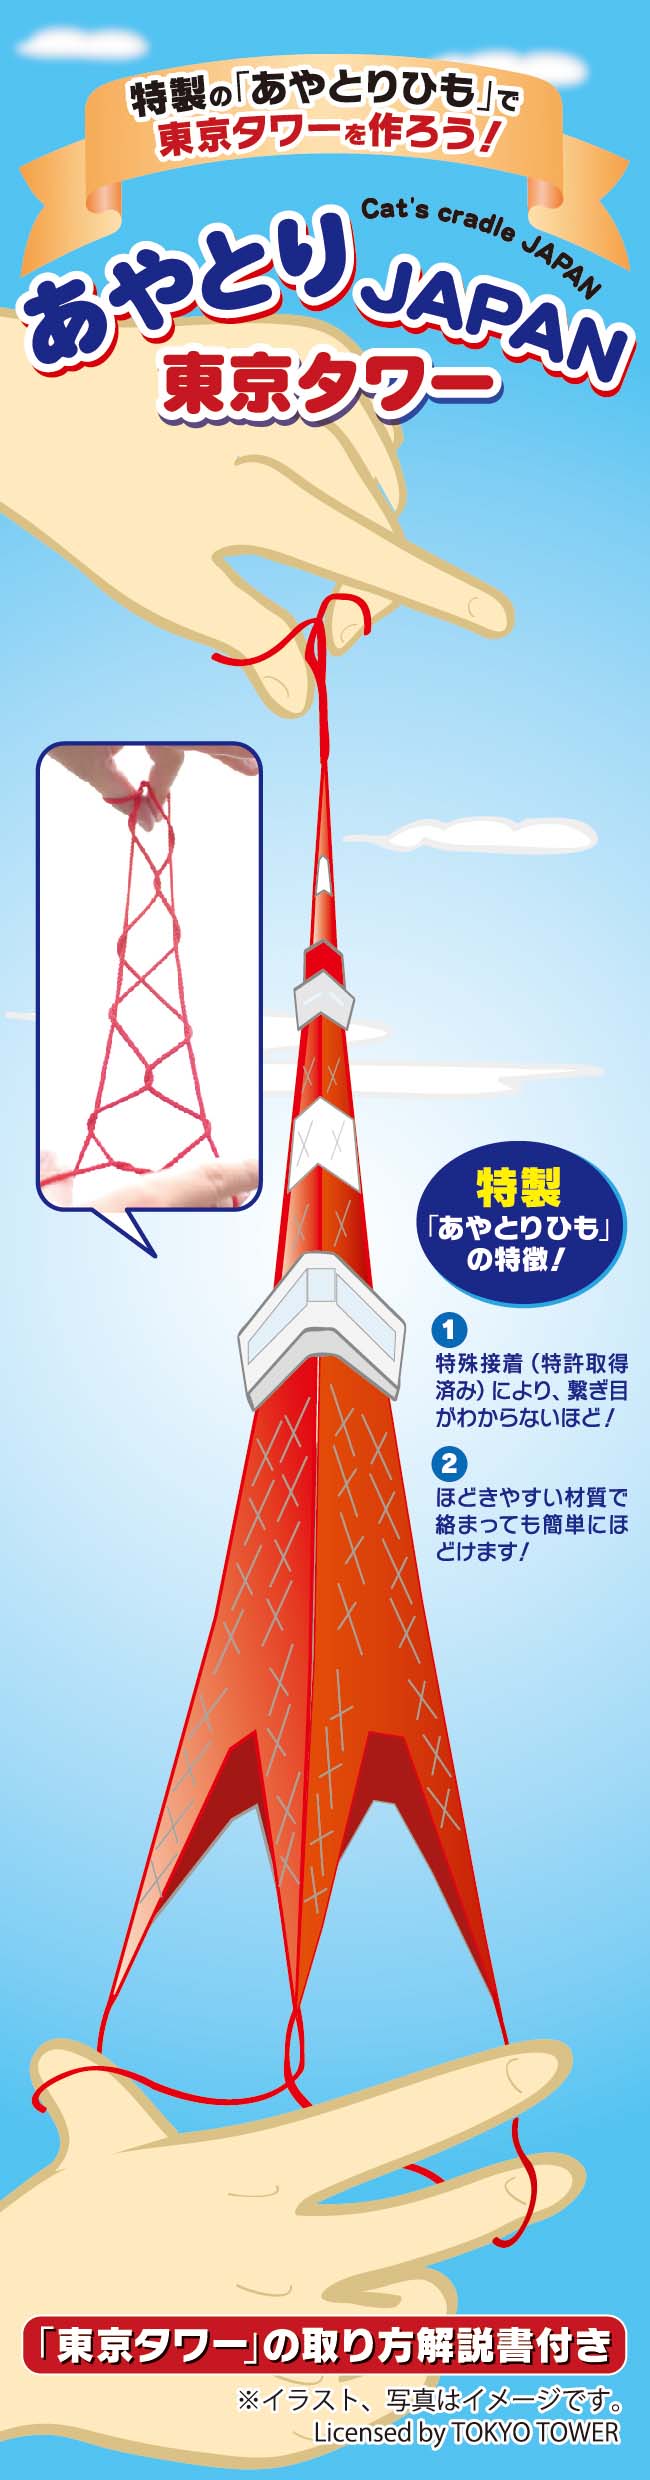 あやとりjapan 東京タワー Slowcurve